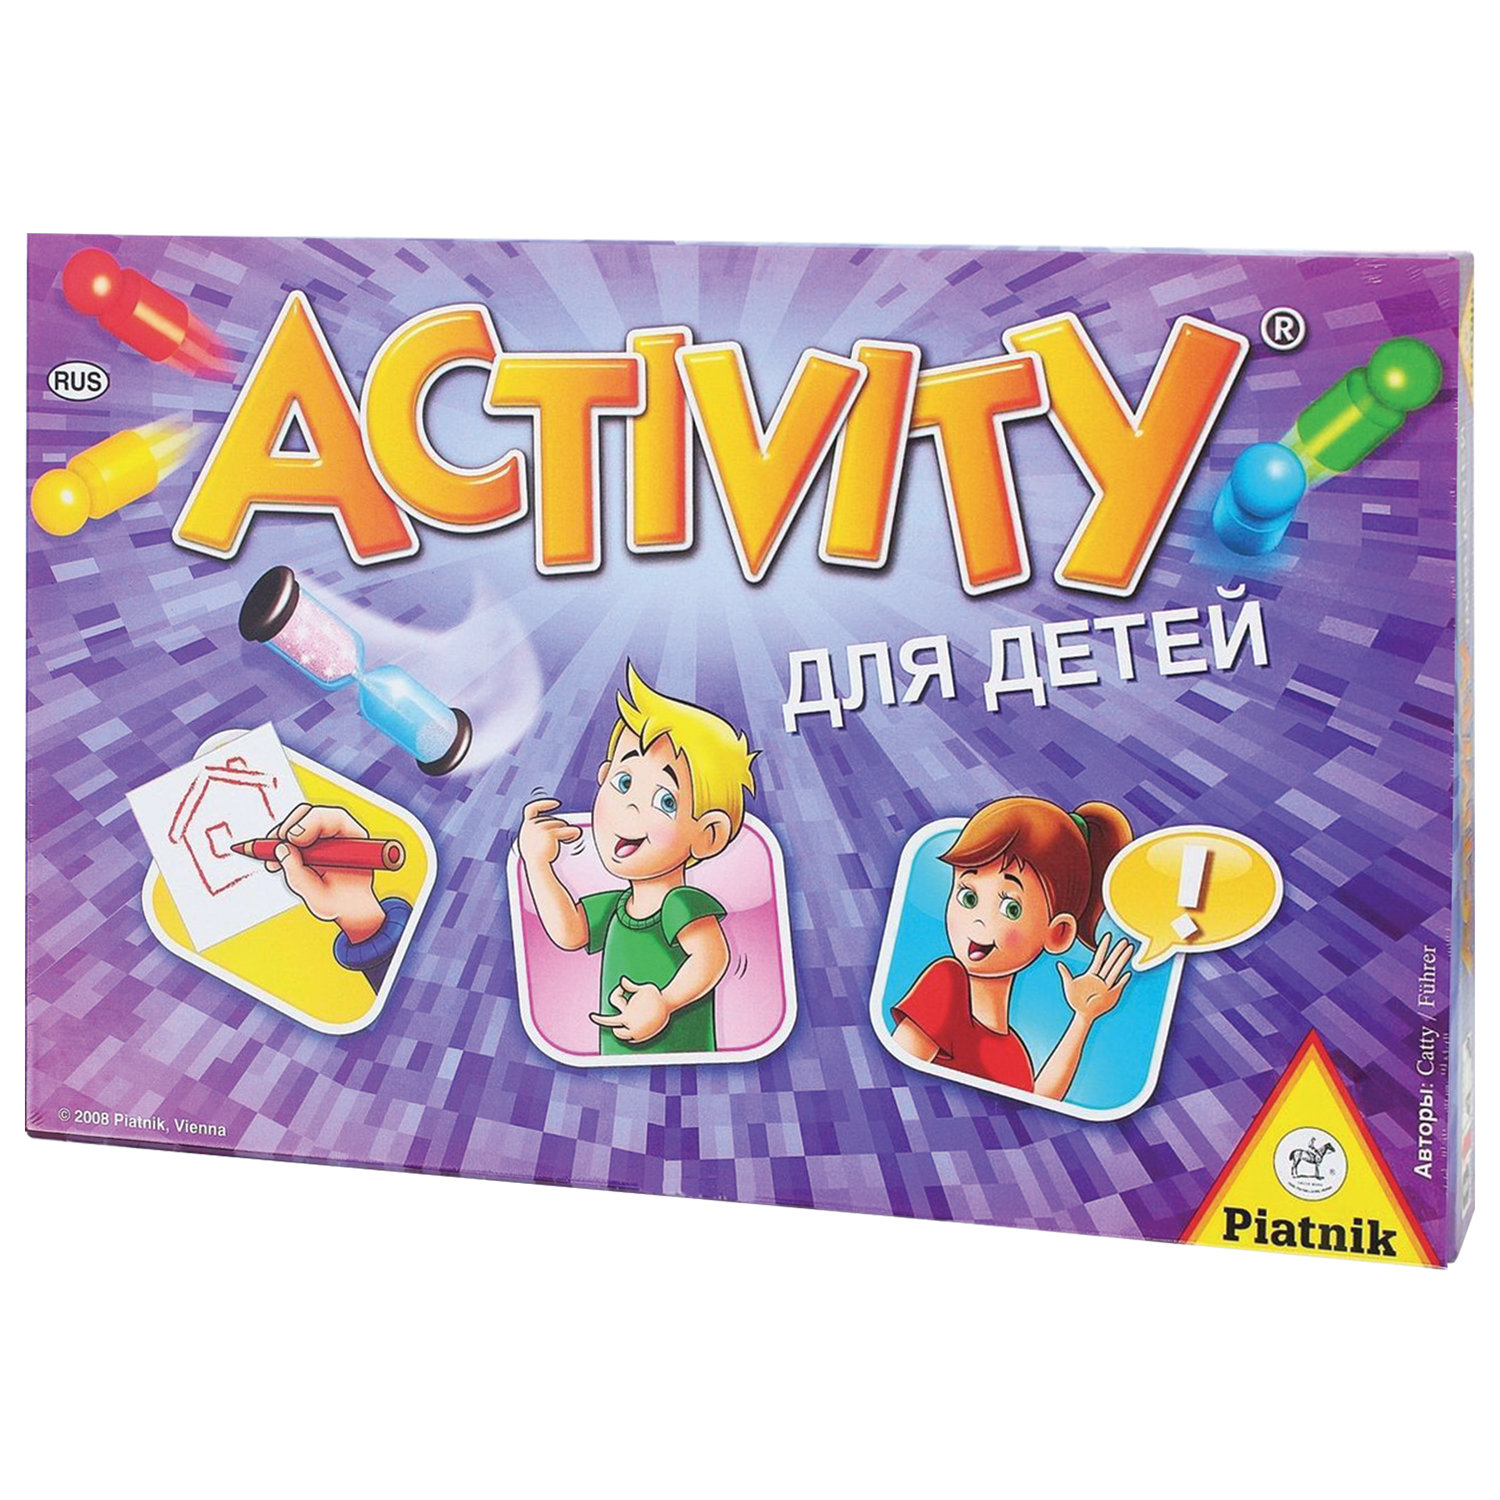 Настольная игра вперед. Настольная игра activity вперед для детей. Игра Piatnik activity(Активити) вперед. 793394 Activity вперед для детей. Игра настольная activity для детей (новое издание) 714047.